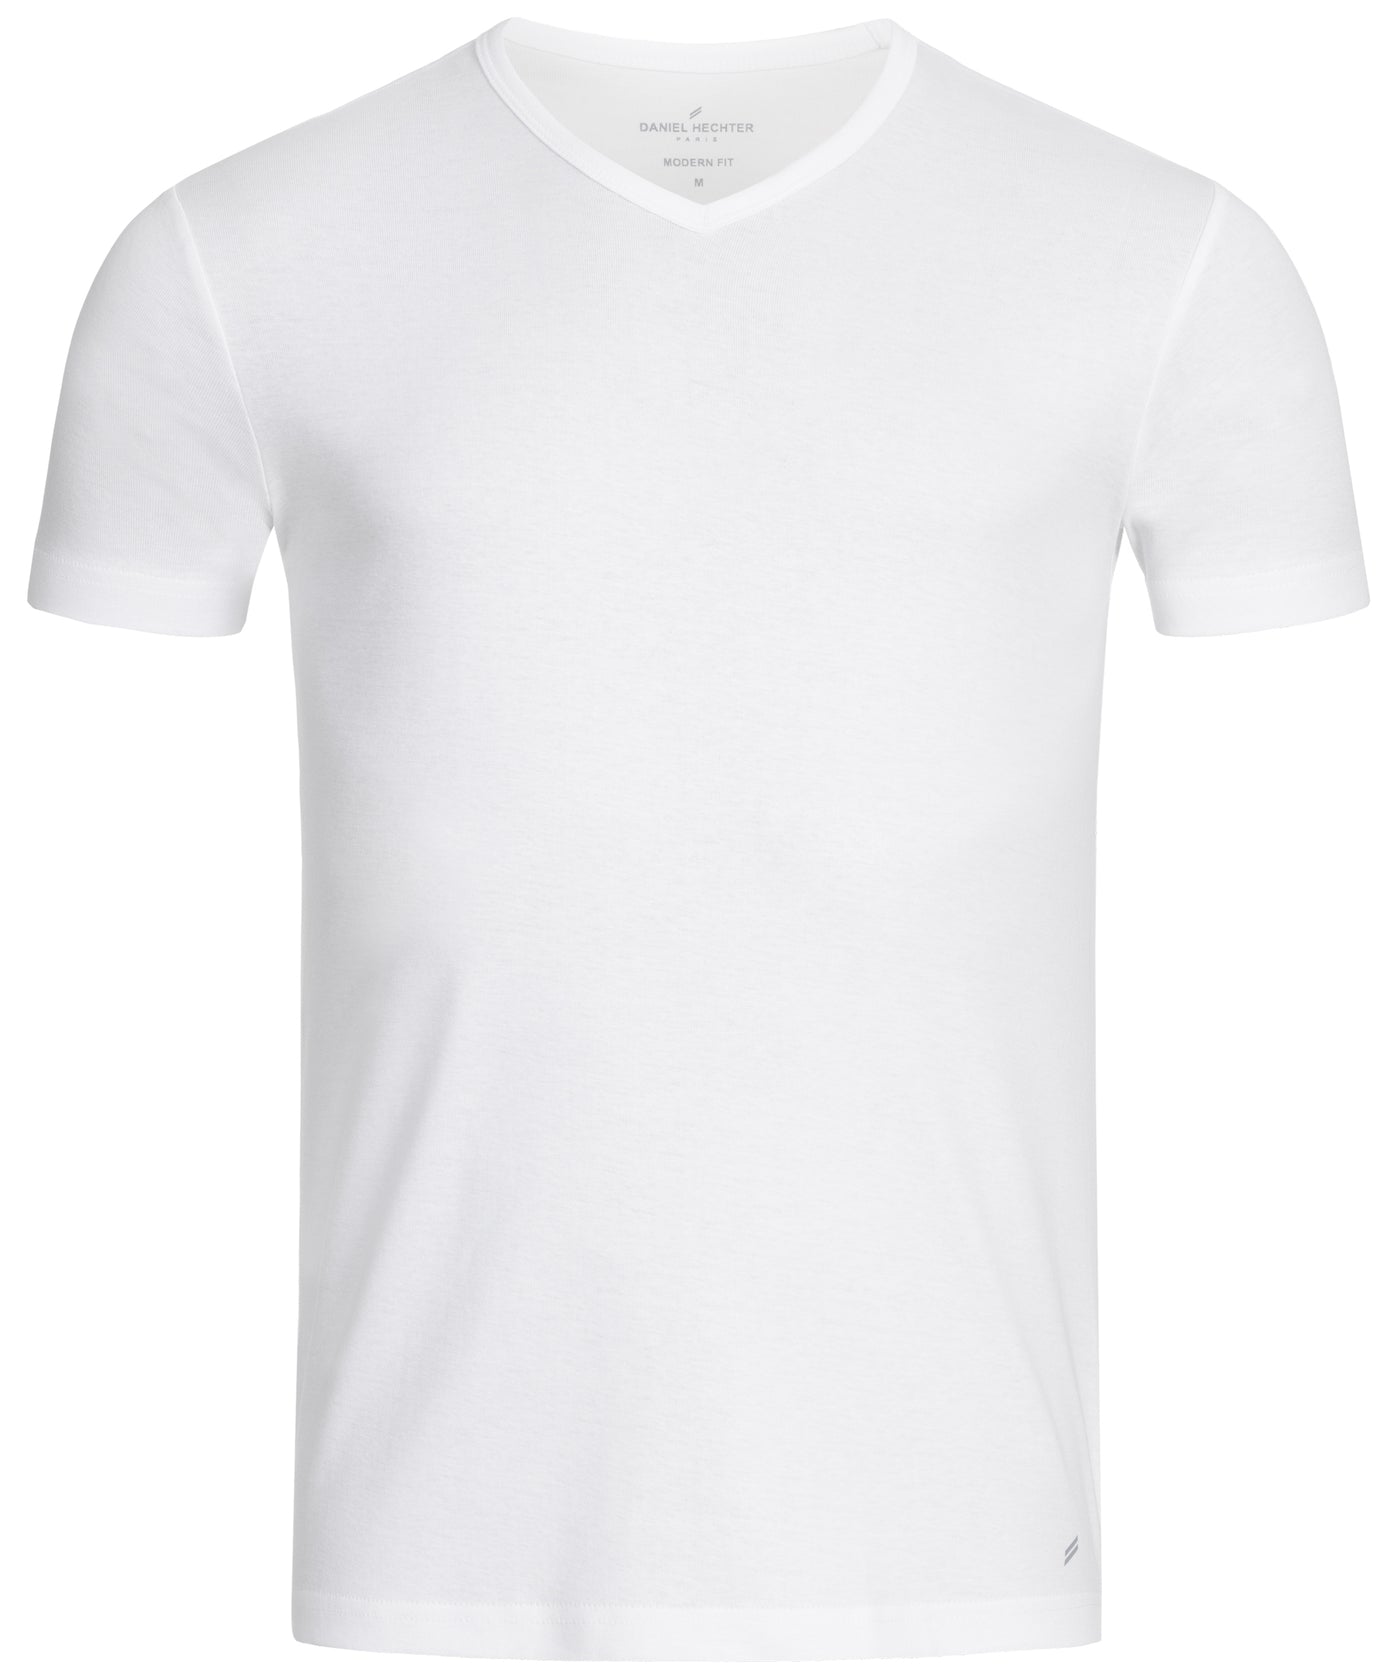 Herren-V-Neck T-Shirt Modern Fit